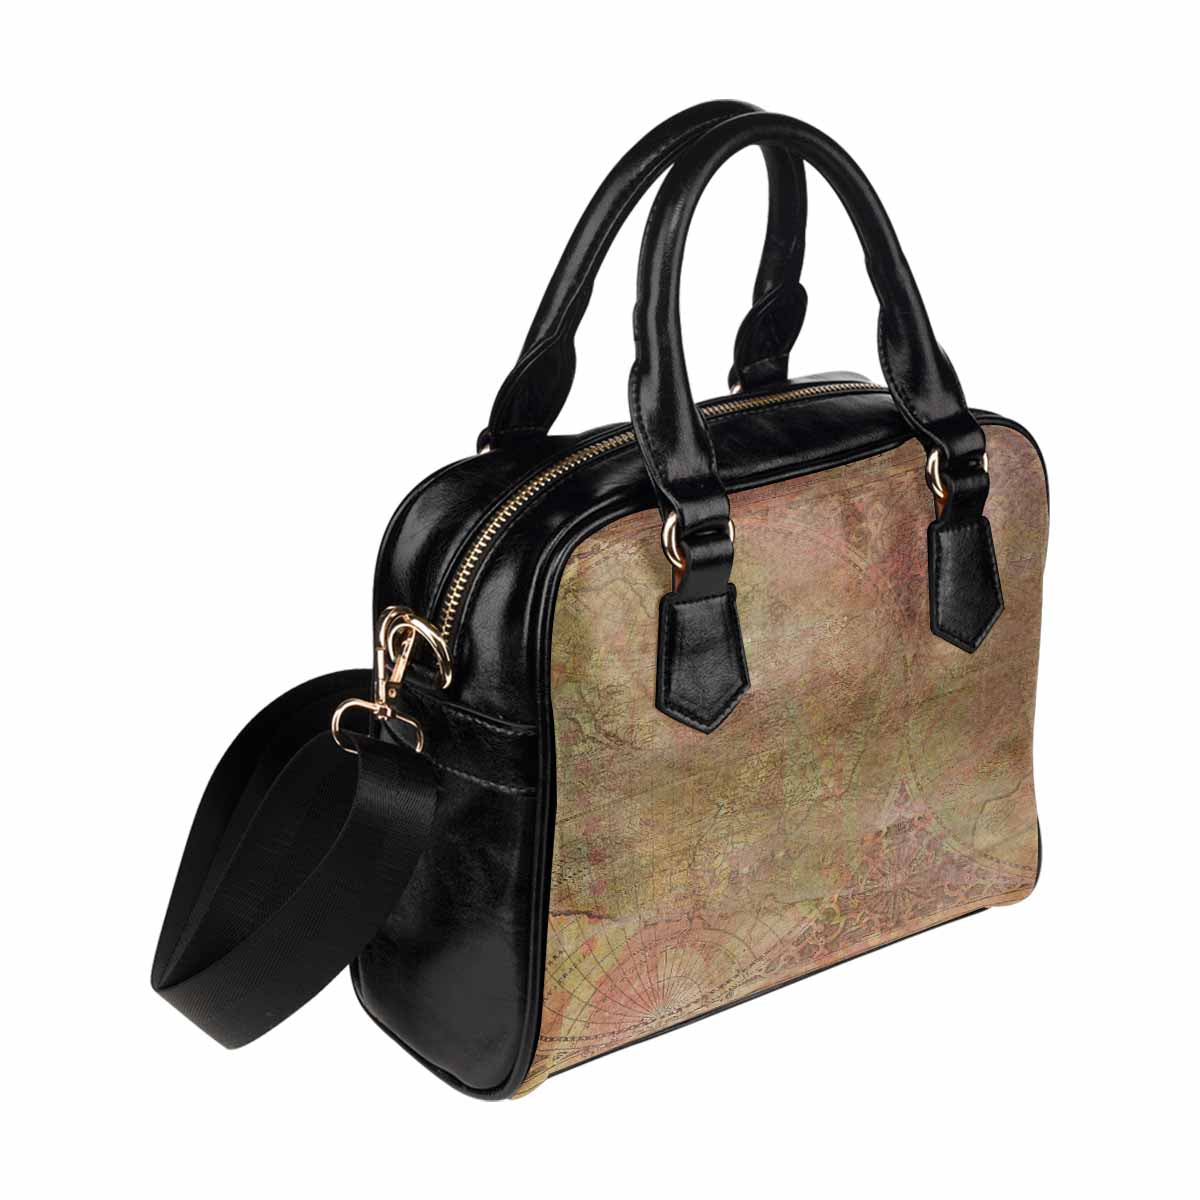 Antique general print handbag, MODEL1695341,Design 62